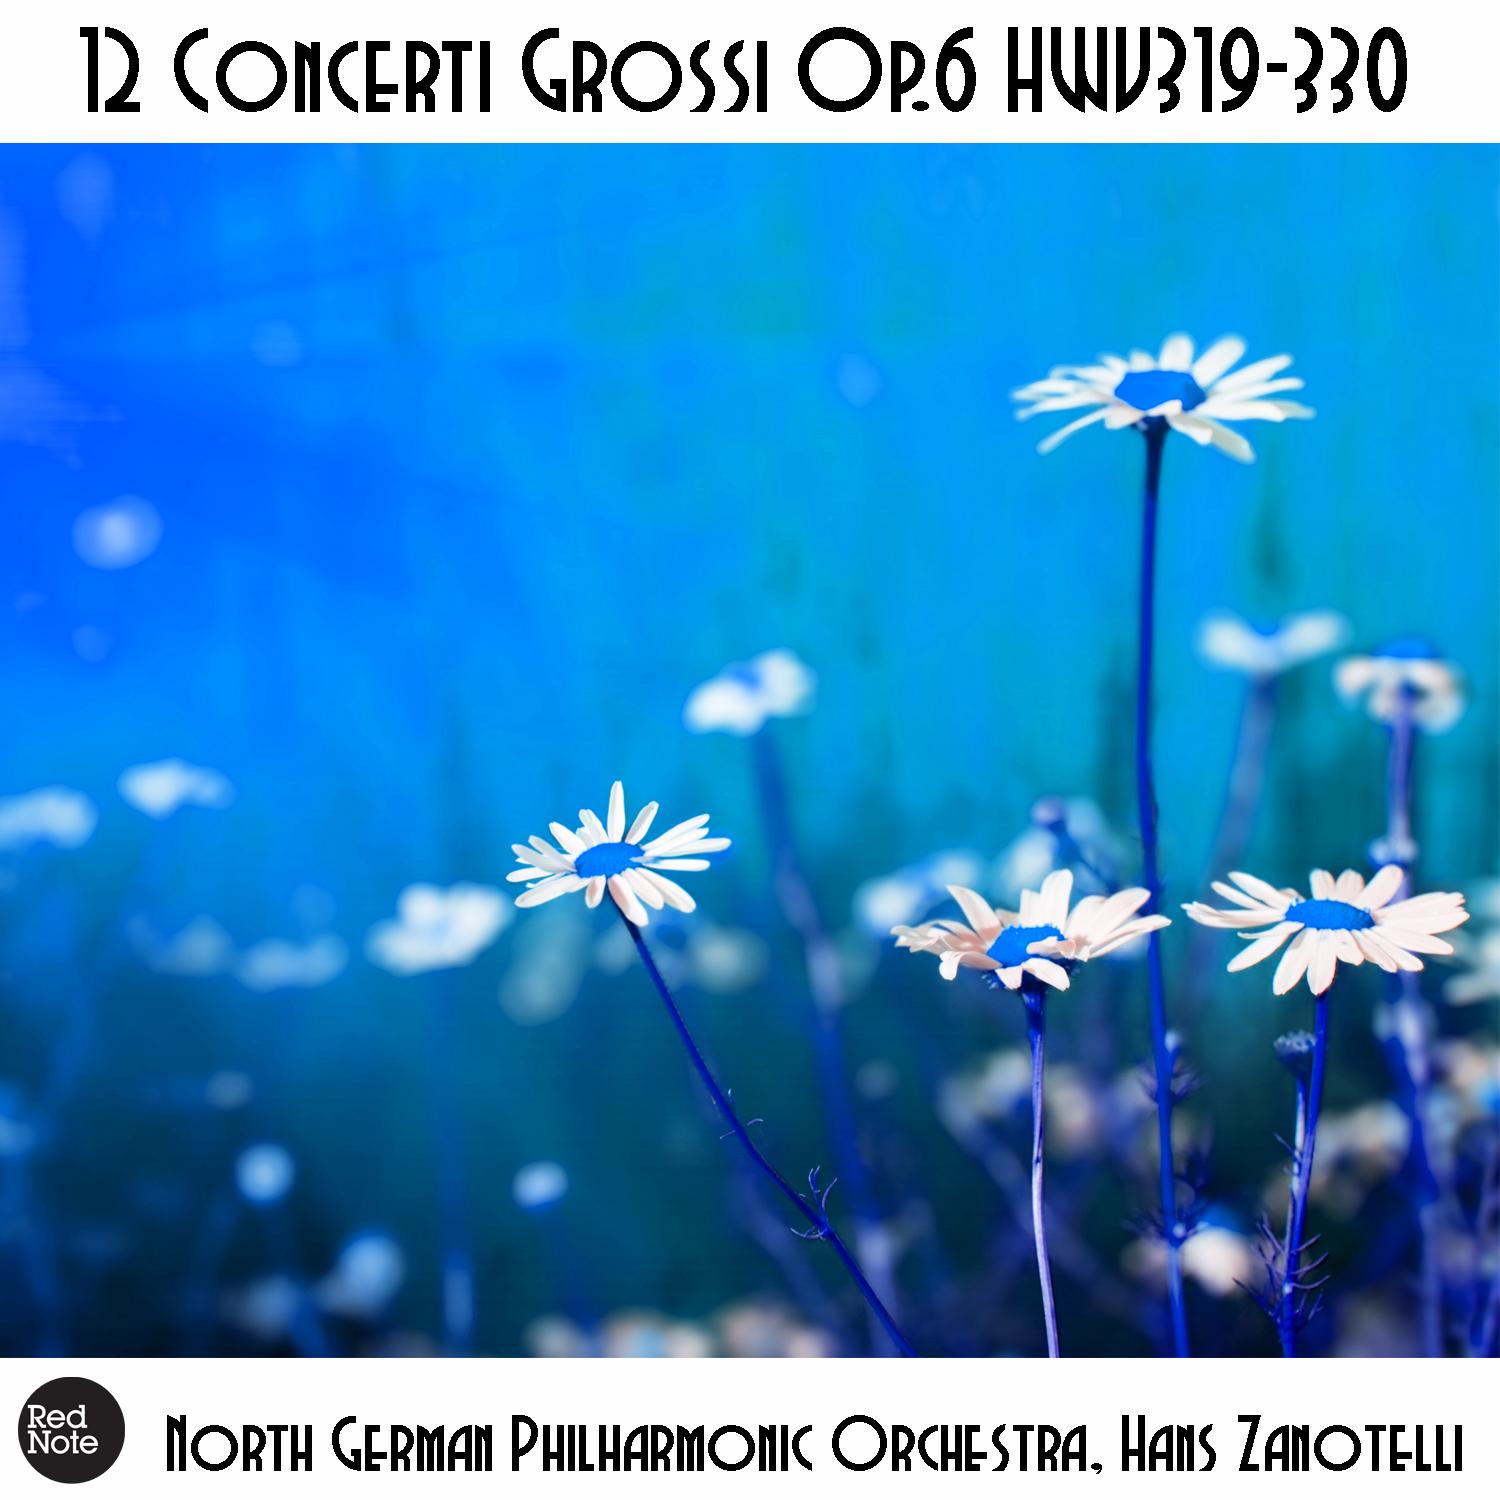 Concerti Grossi No. 2, Op. 6 HWV320: IV. Allegro ma non troppo